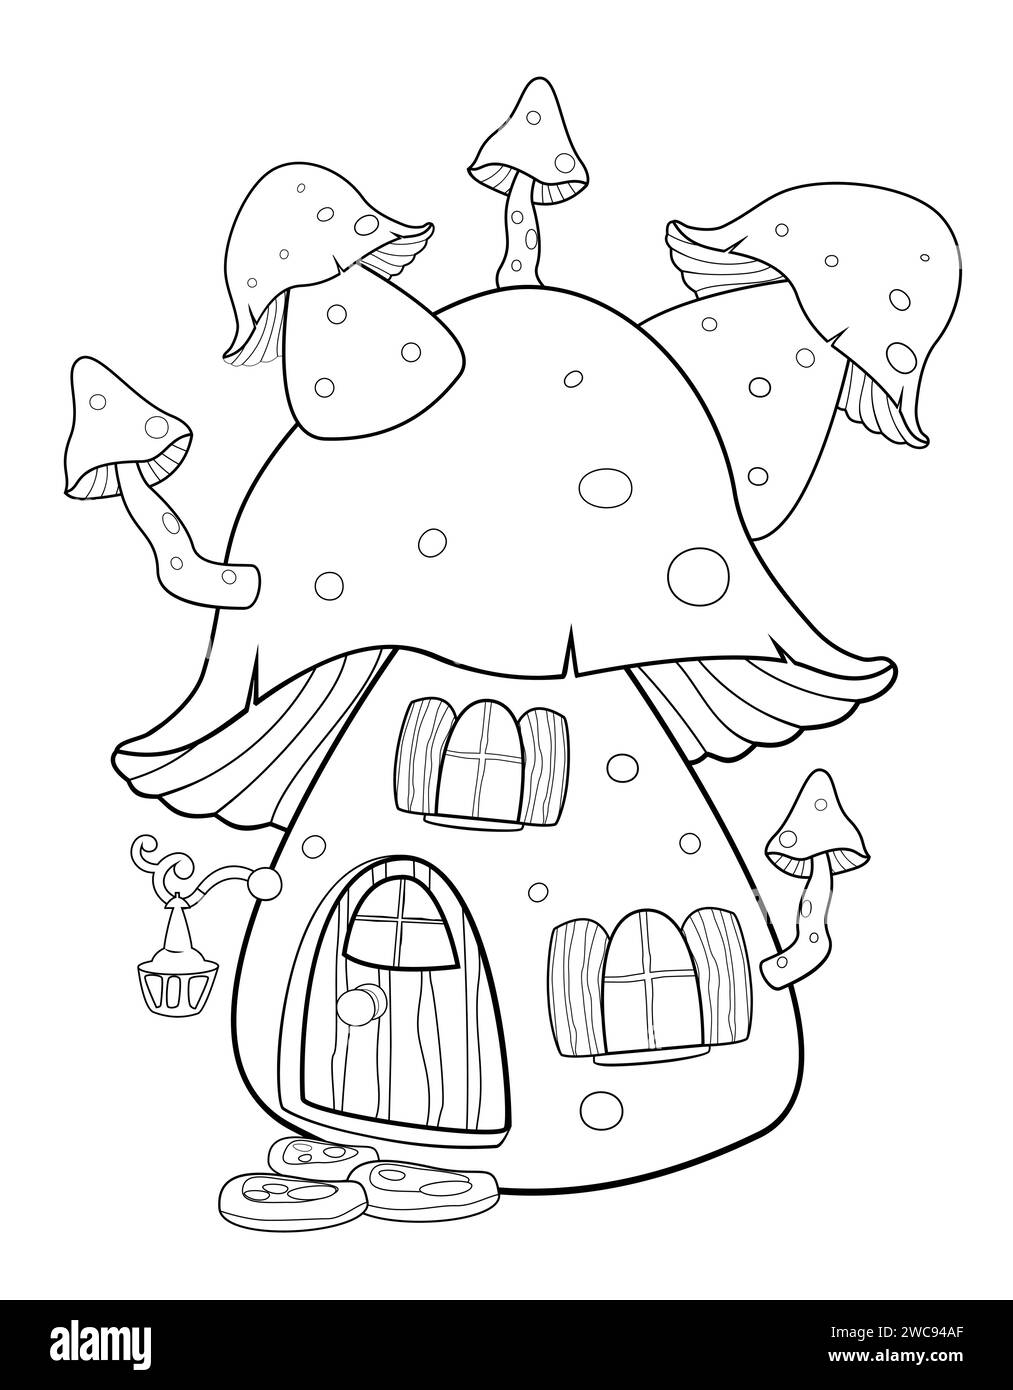 Maison de champignon de fantaisie de dessin animé. Petite maison de fées. Esquisser dans les contours pour colorier. Illustration de Vecteur